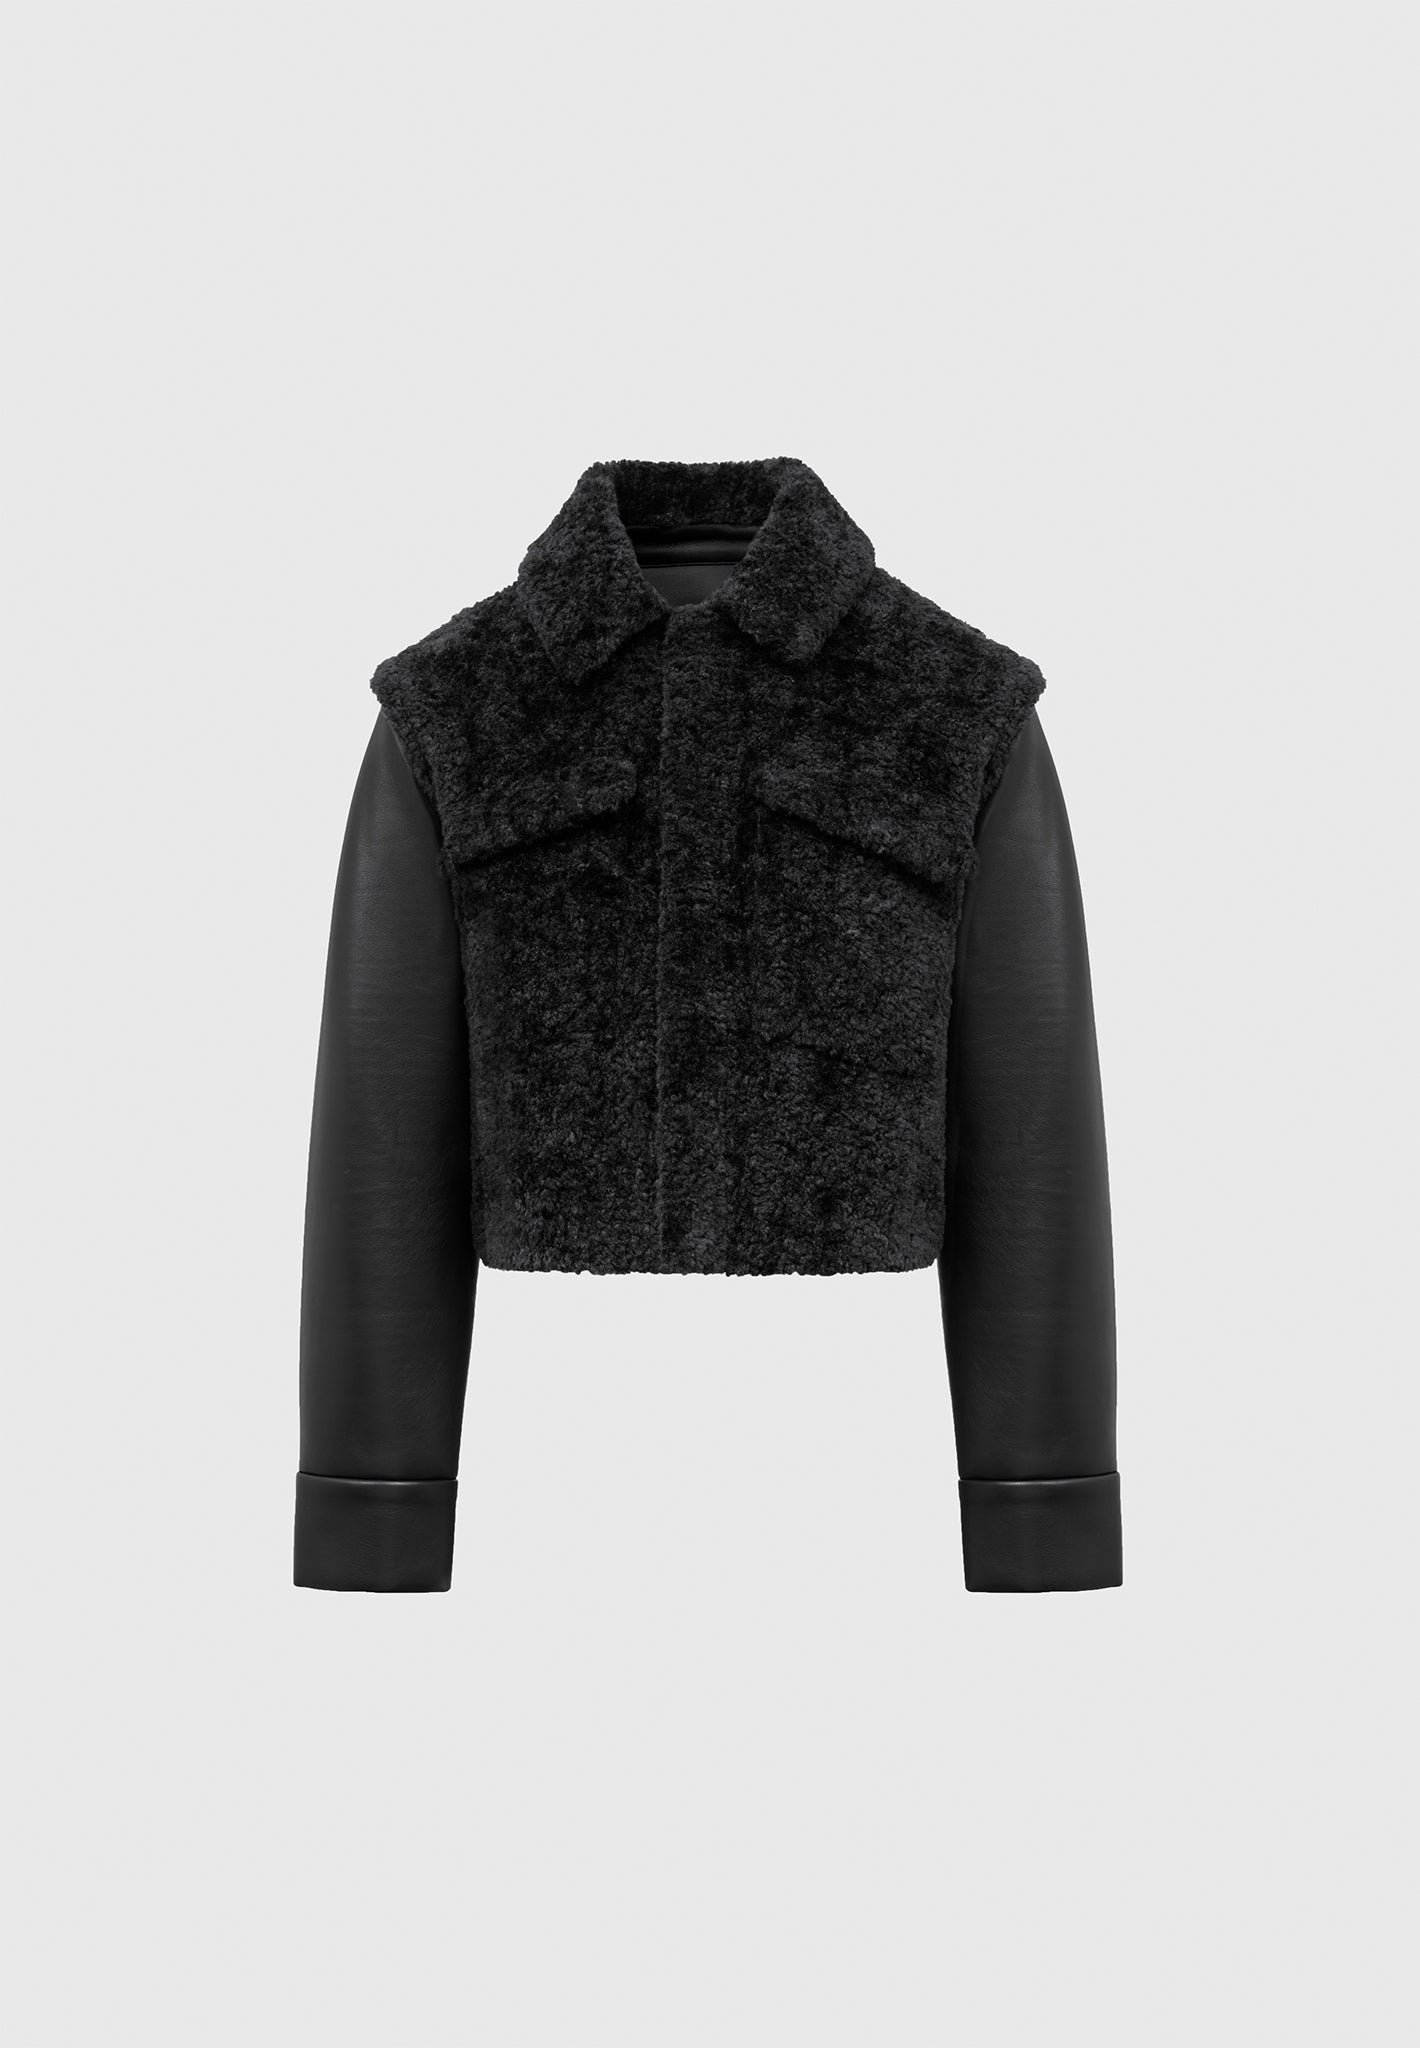 plush-jacket-with-vegan-leather-sleeves-black